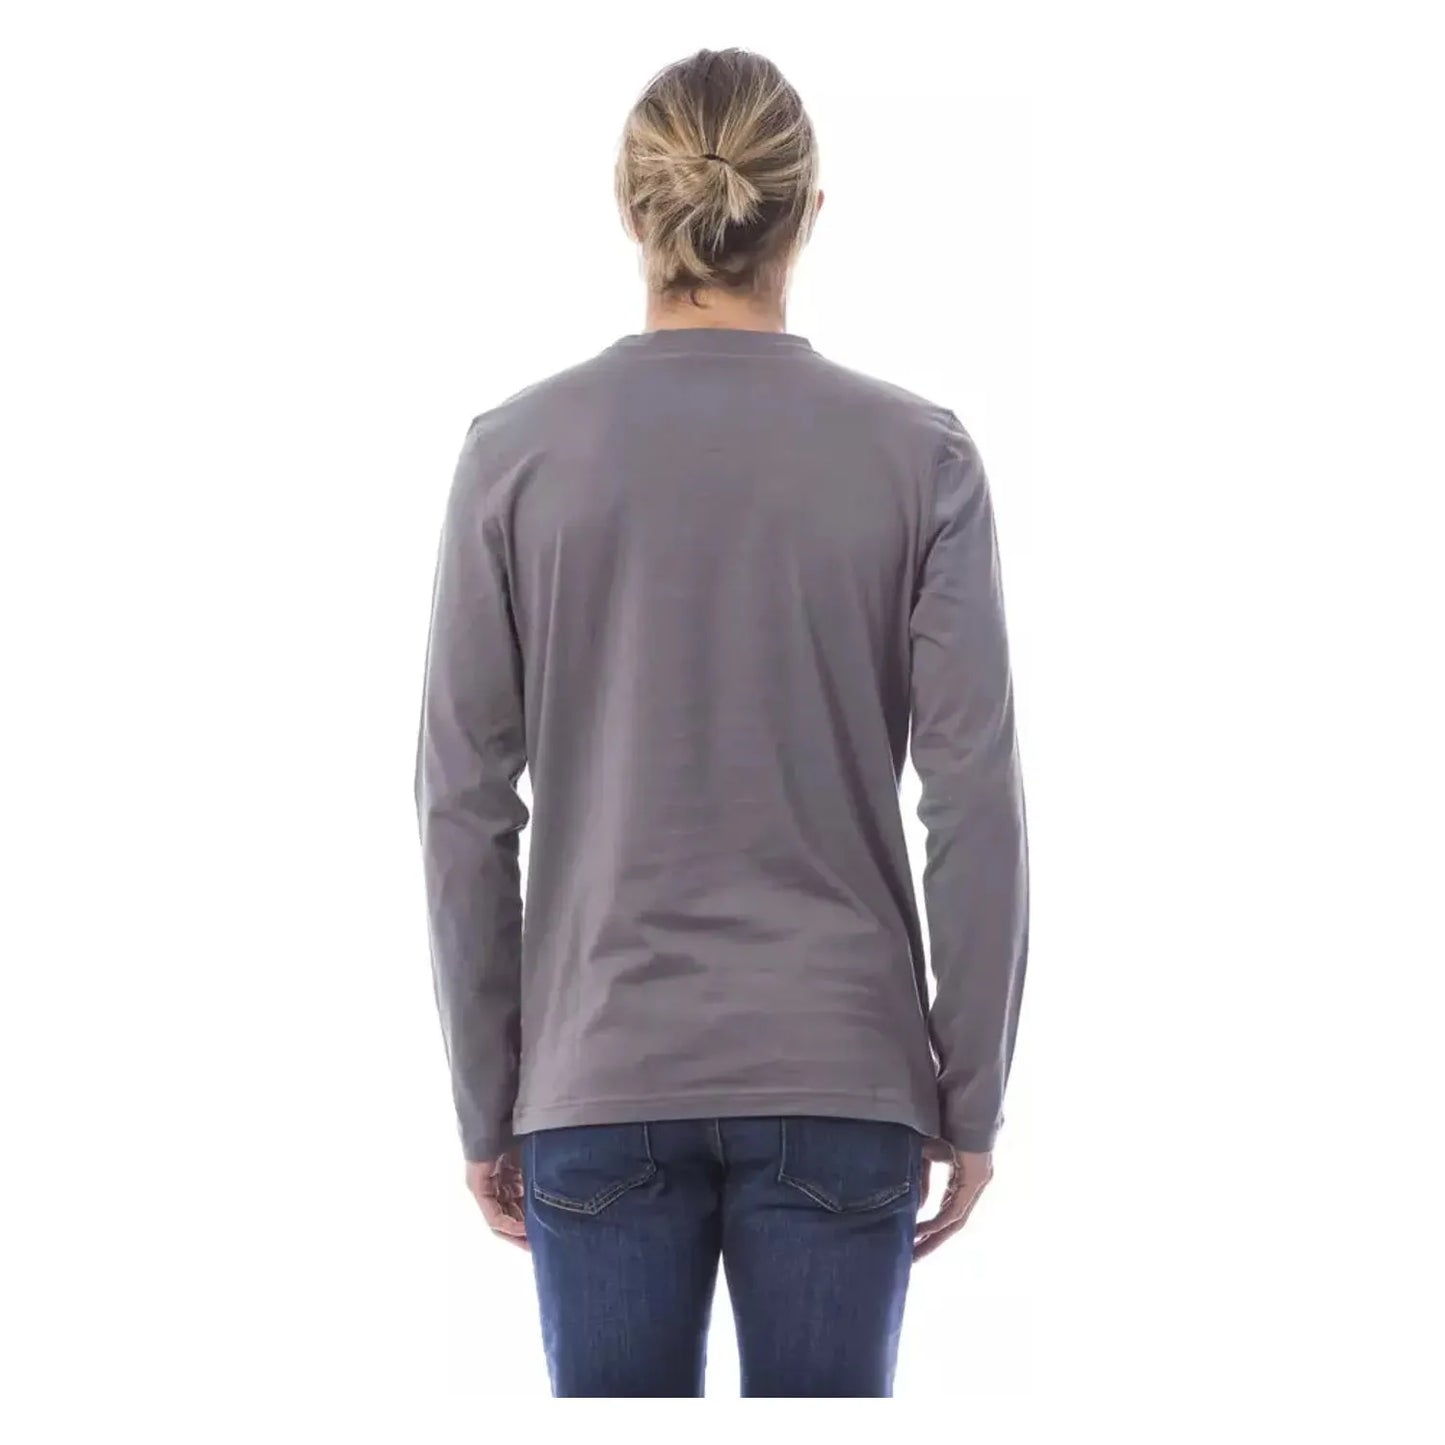 Verri Elegant Long Sleeve Gray T-Shirt vgrigiochiaro-t-shirt